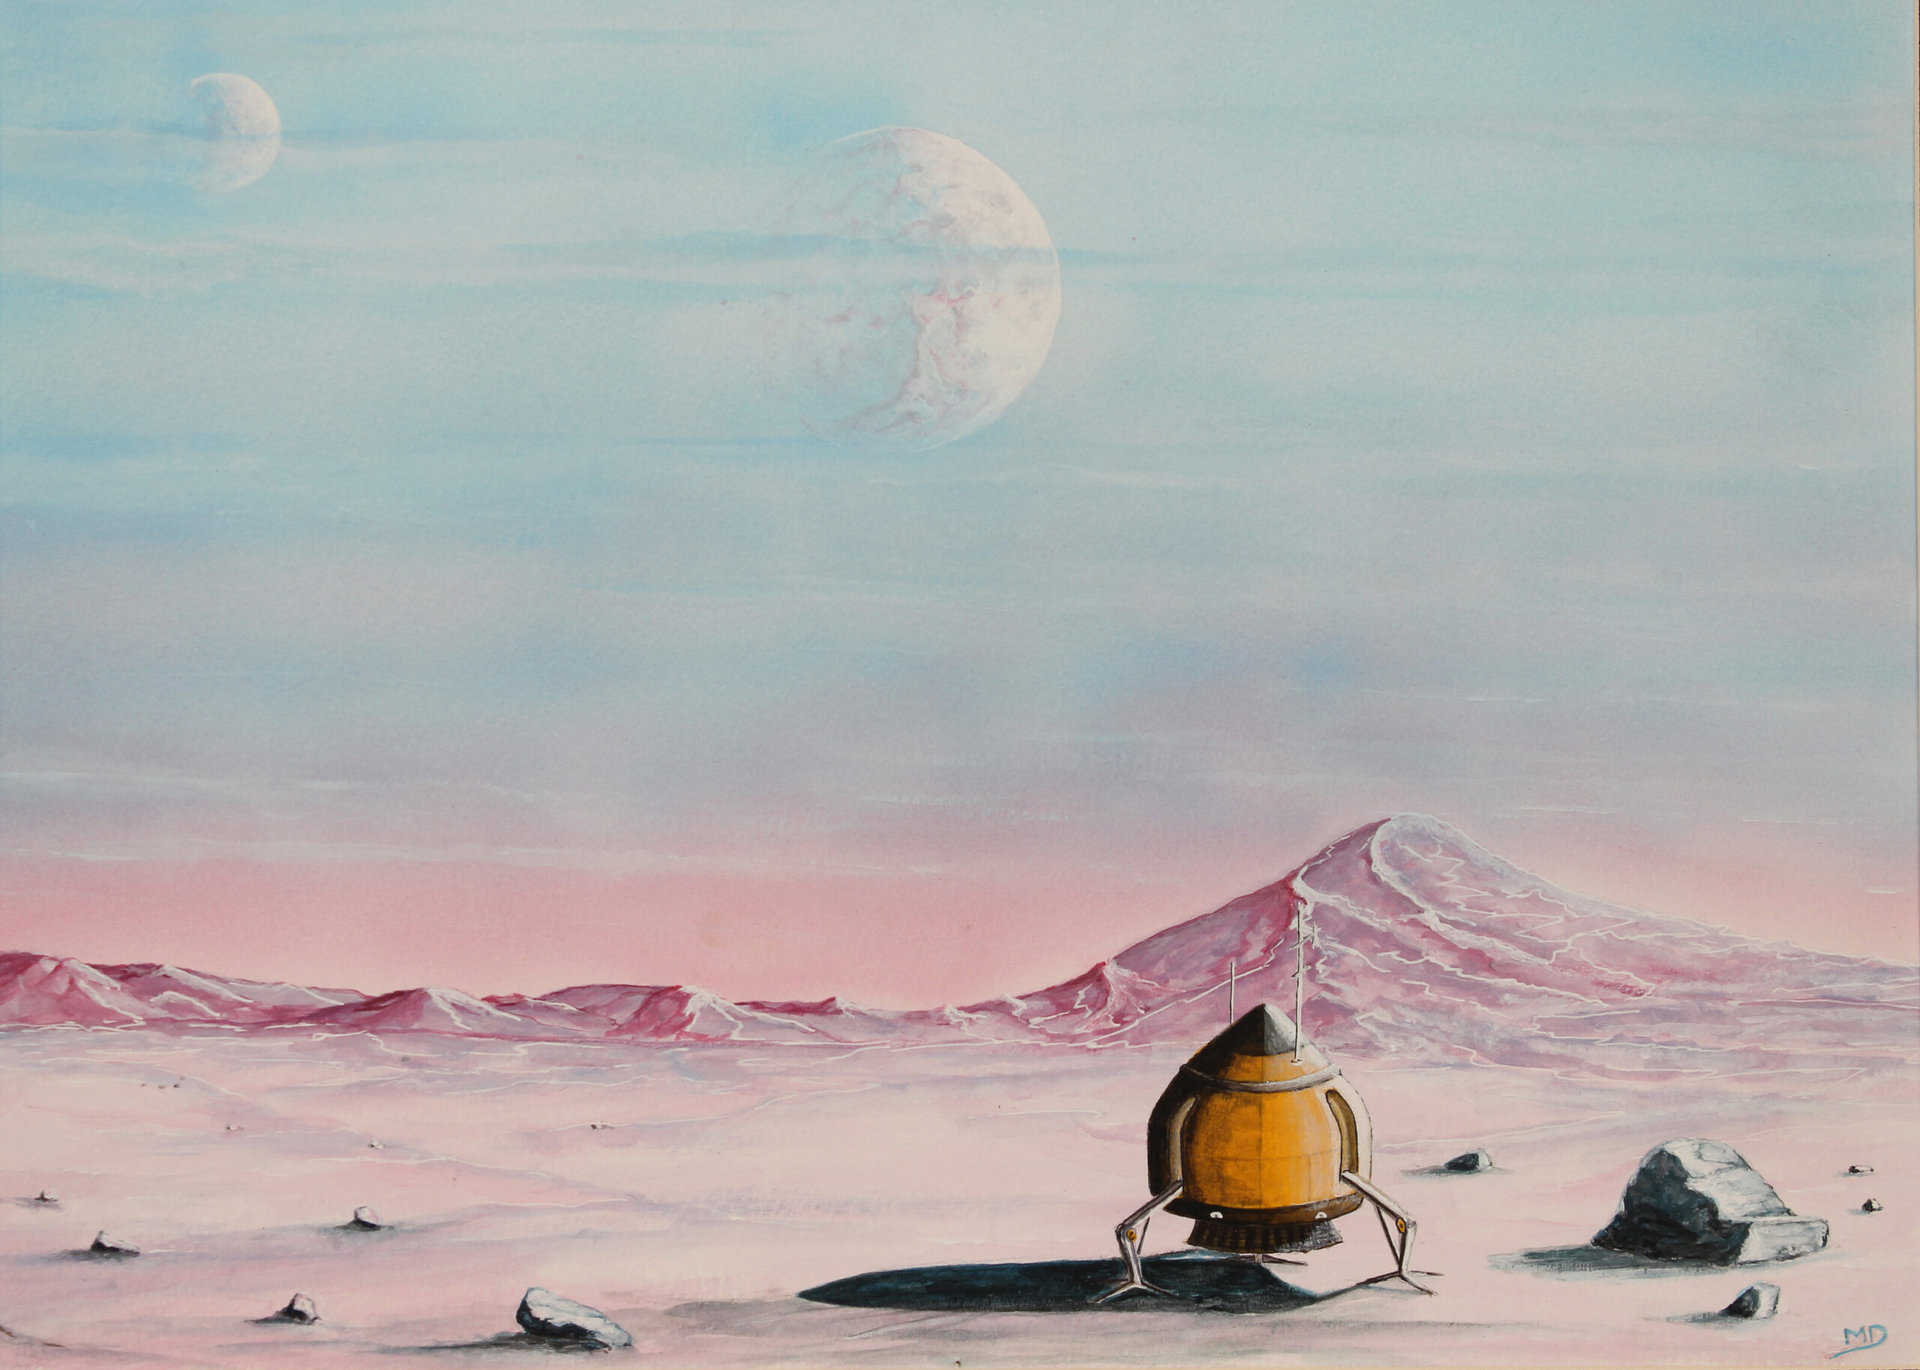 oeuvre d'art, science-fiction, aquarelle acrylique sur papier A3, david morel artiste, un petit vaisseau posé sur une planète rocheuse avec deux lunes dans le ciel